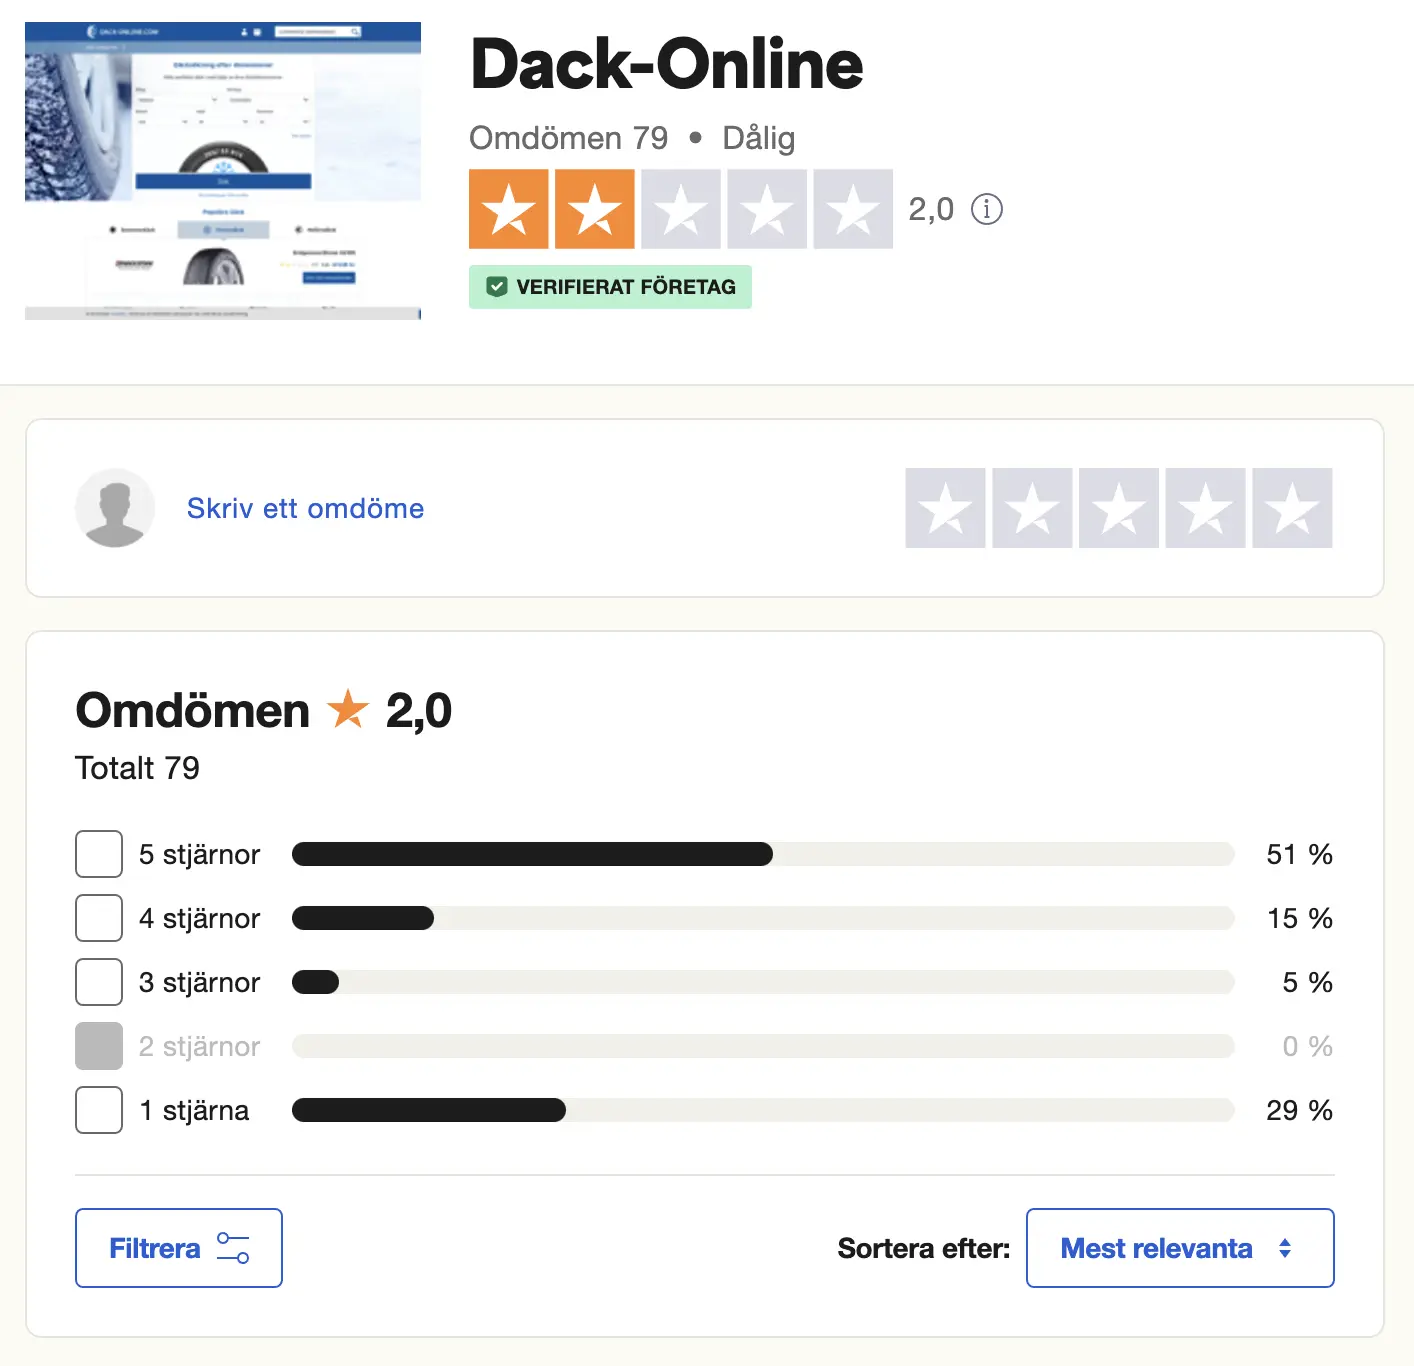 Dack-online.com Omdöme